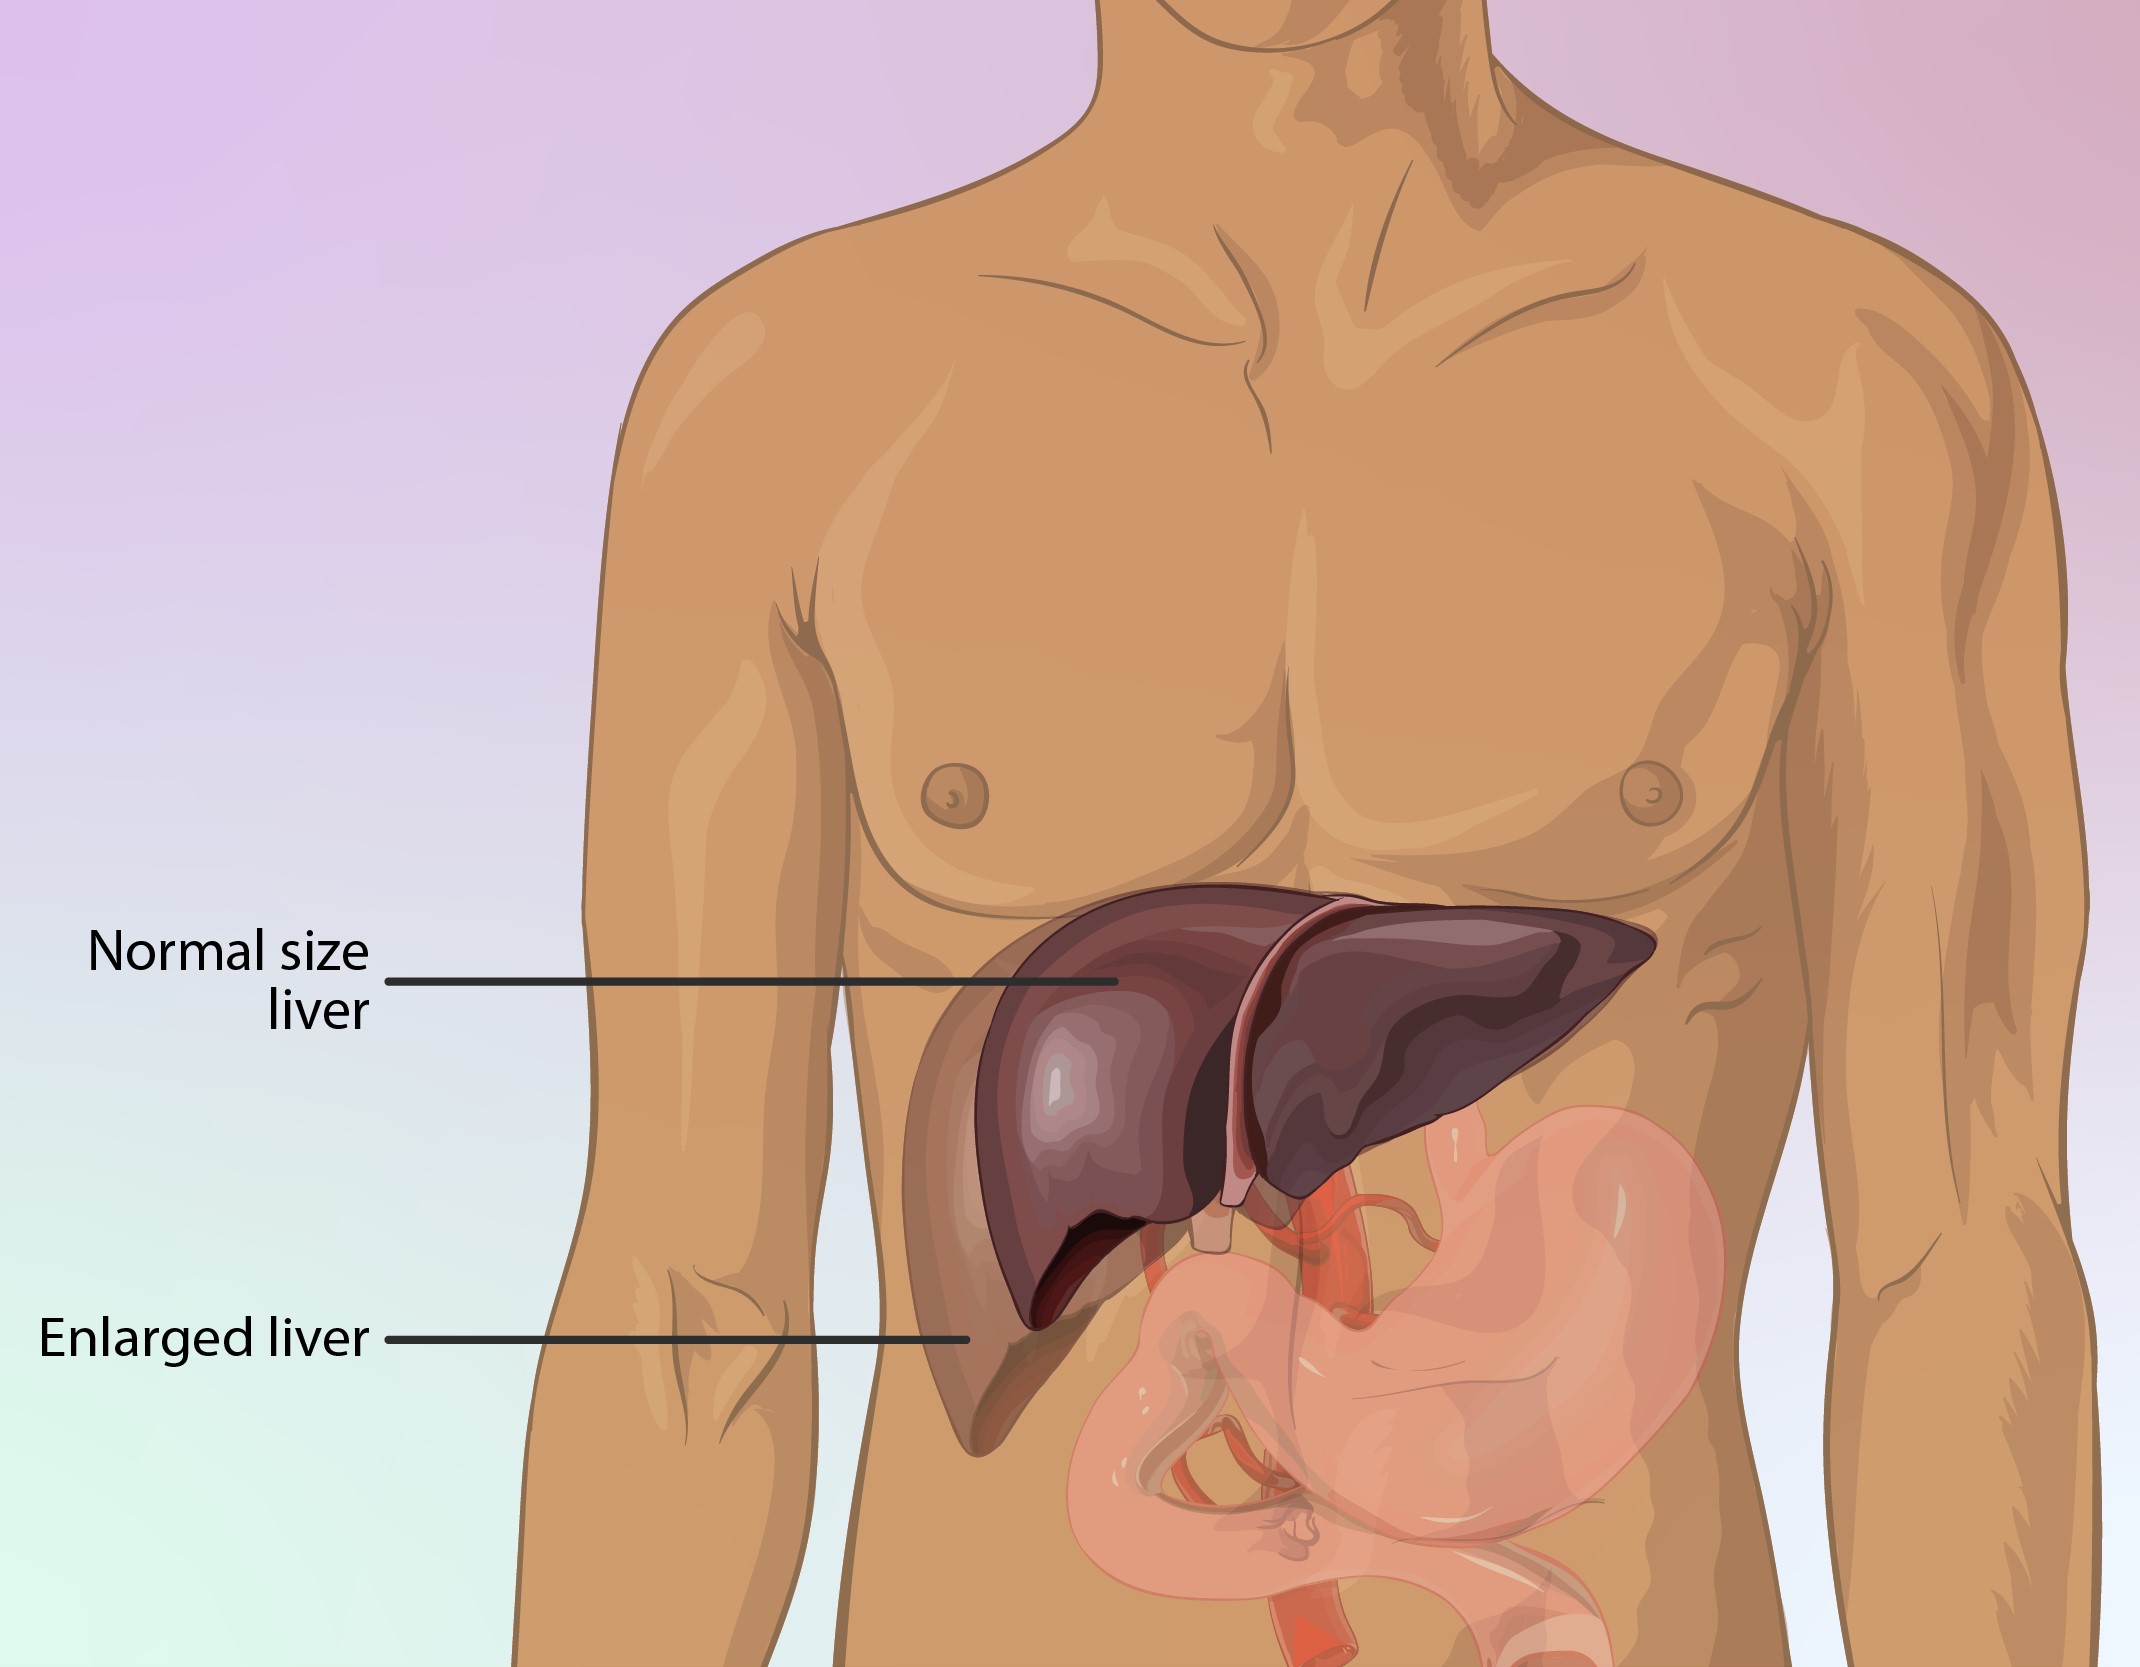 Enlarged Liver